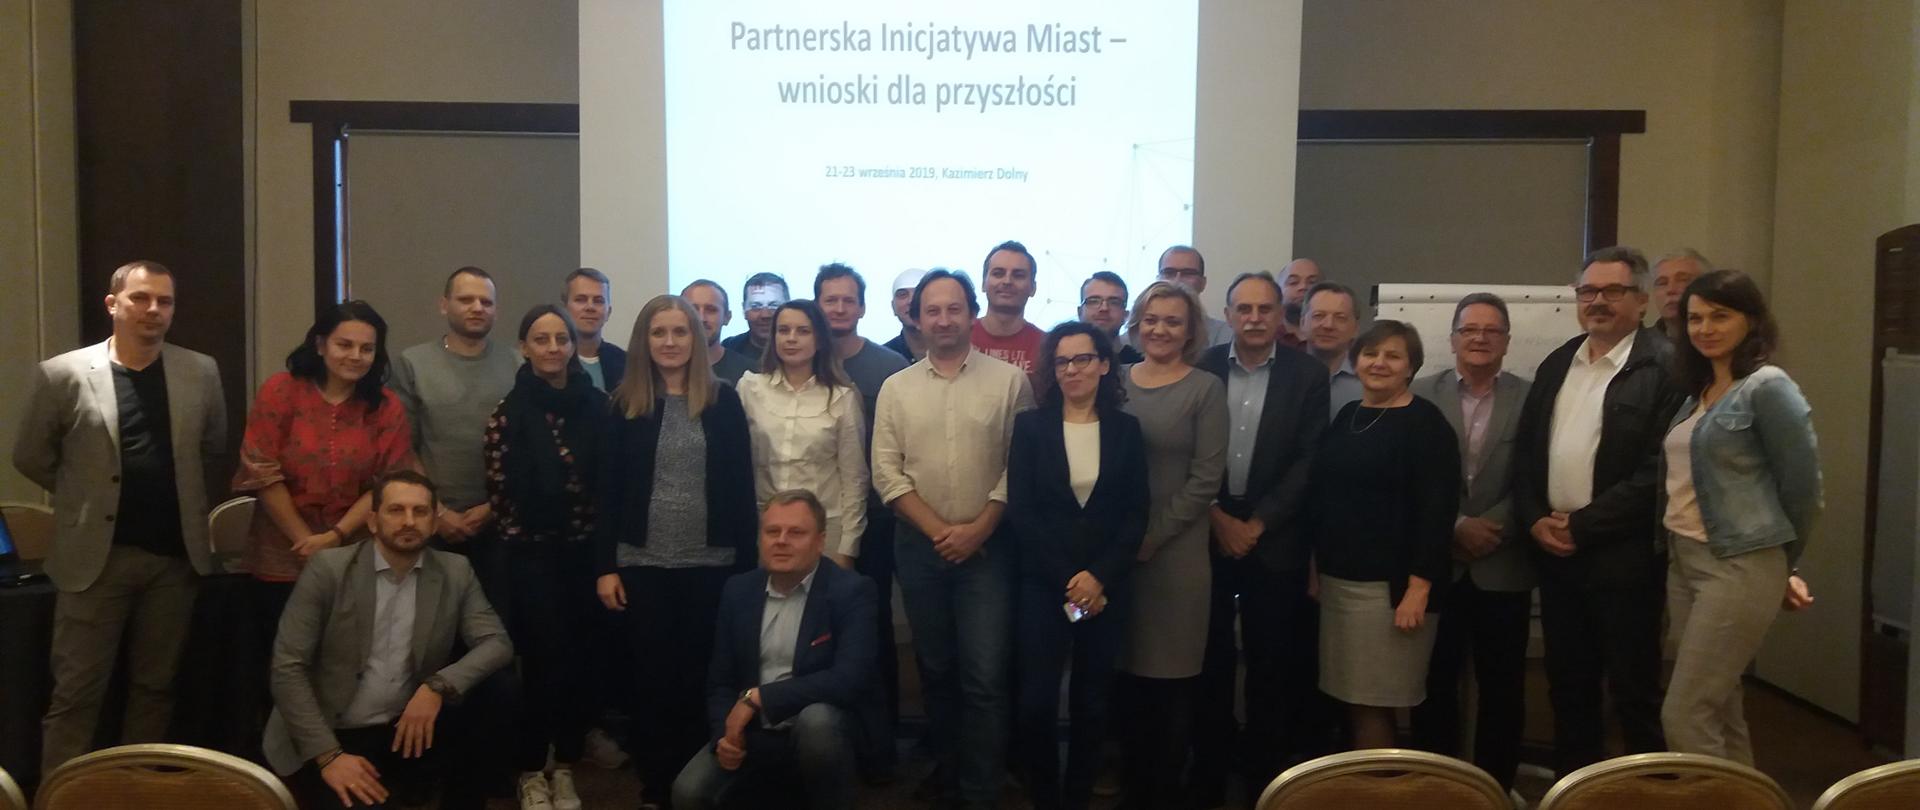 Zdjęcie grupowe uczestników warsztatów w ramach podsumowania Partnerskiej Inicjatywy Miast. Spotkanie odbyło się w październiku 2019 r. w Kazimierzu Dolnym